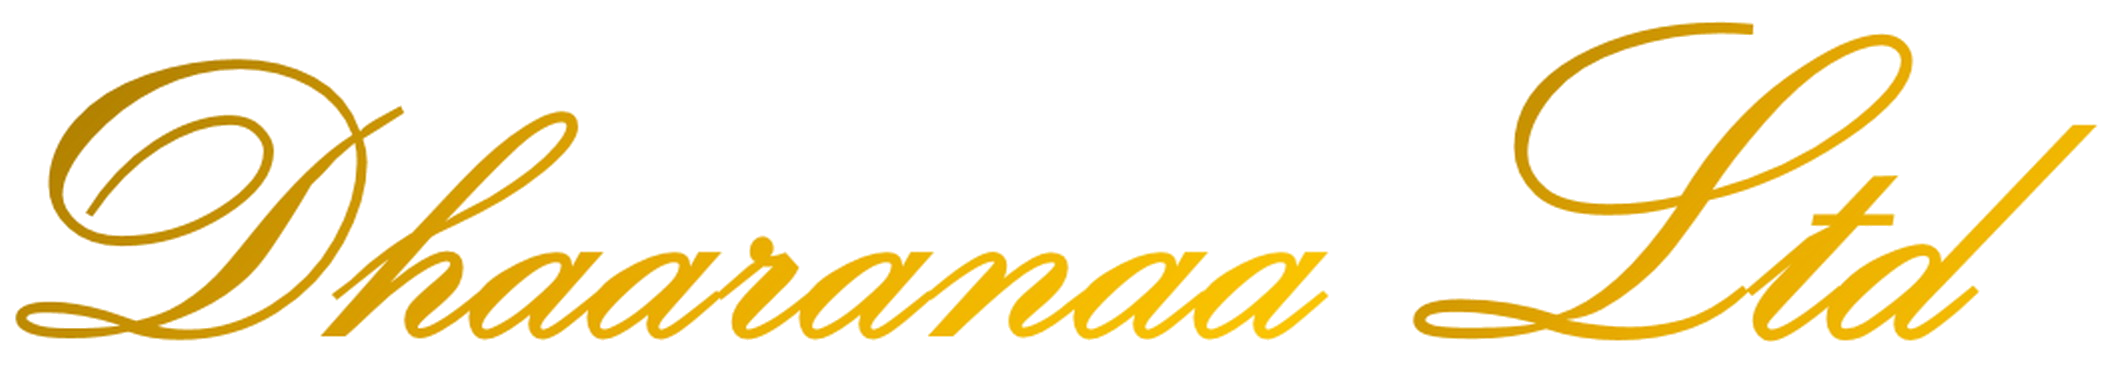 Logo for Dhaaranaa Ltd